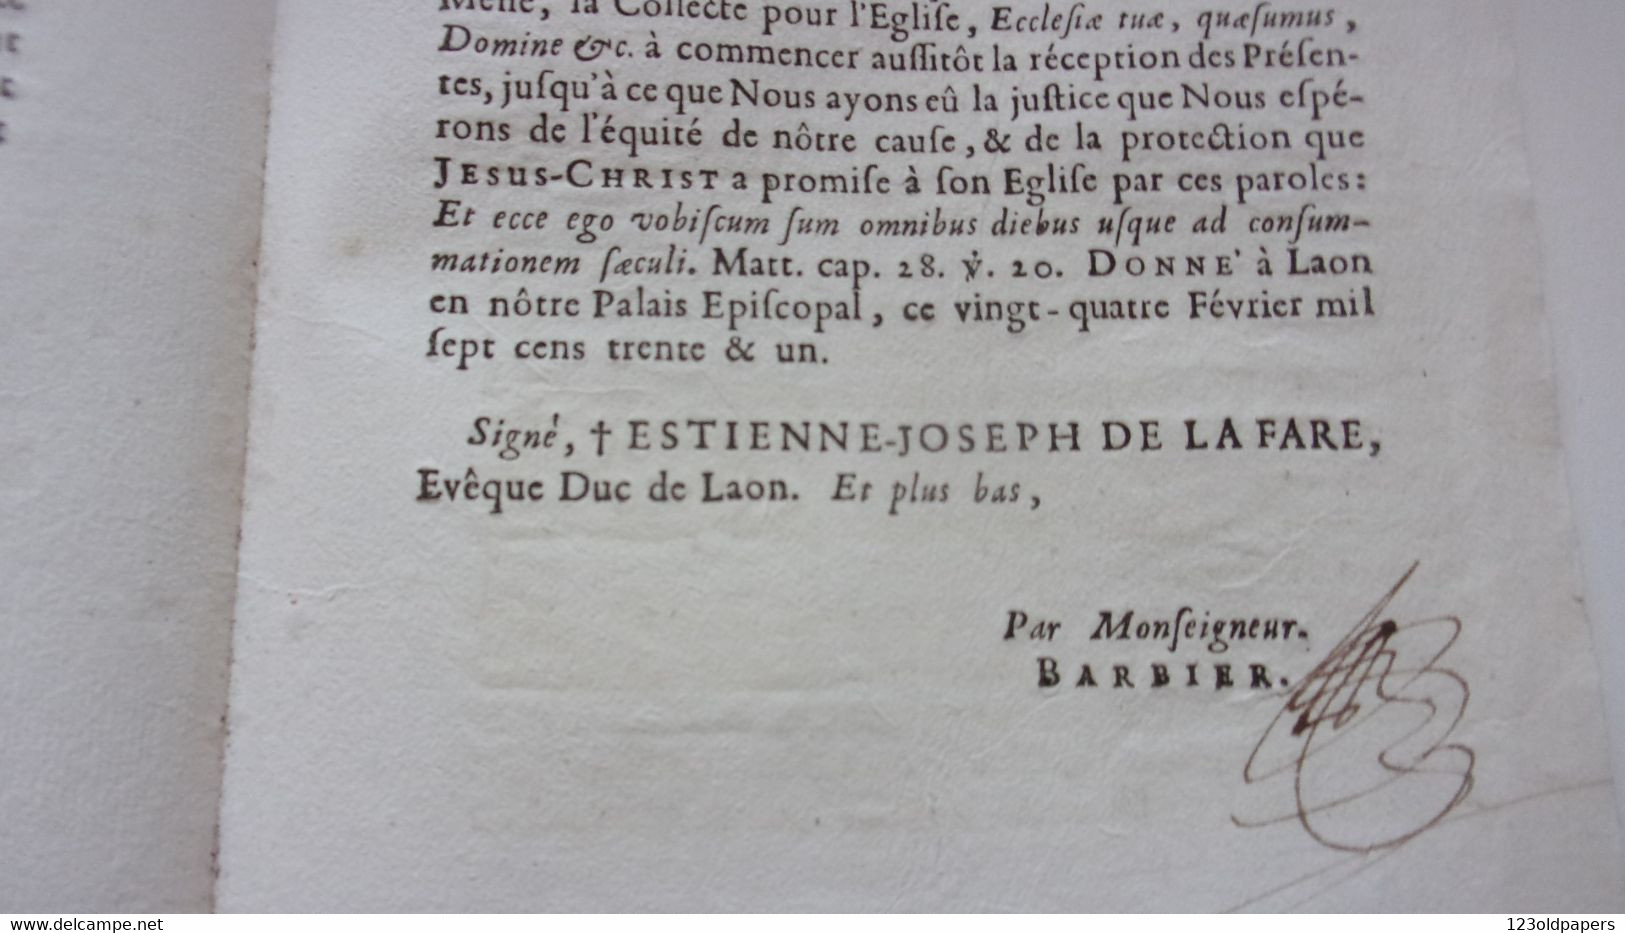 ♥️ AISNE LAON 1731 LETTRE PASTORALE Etienne-Joseph de LA FARE MONSEIGNEUR EVEQUE COMTE D ANISY SECOND PAIR DE FRANCE